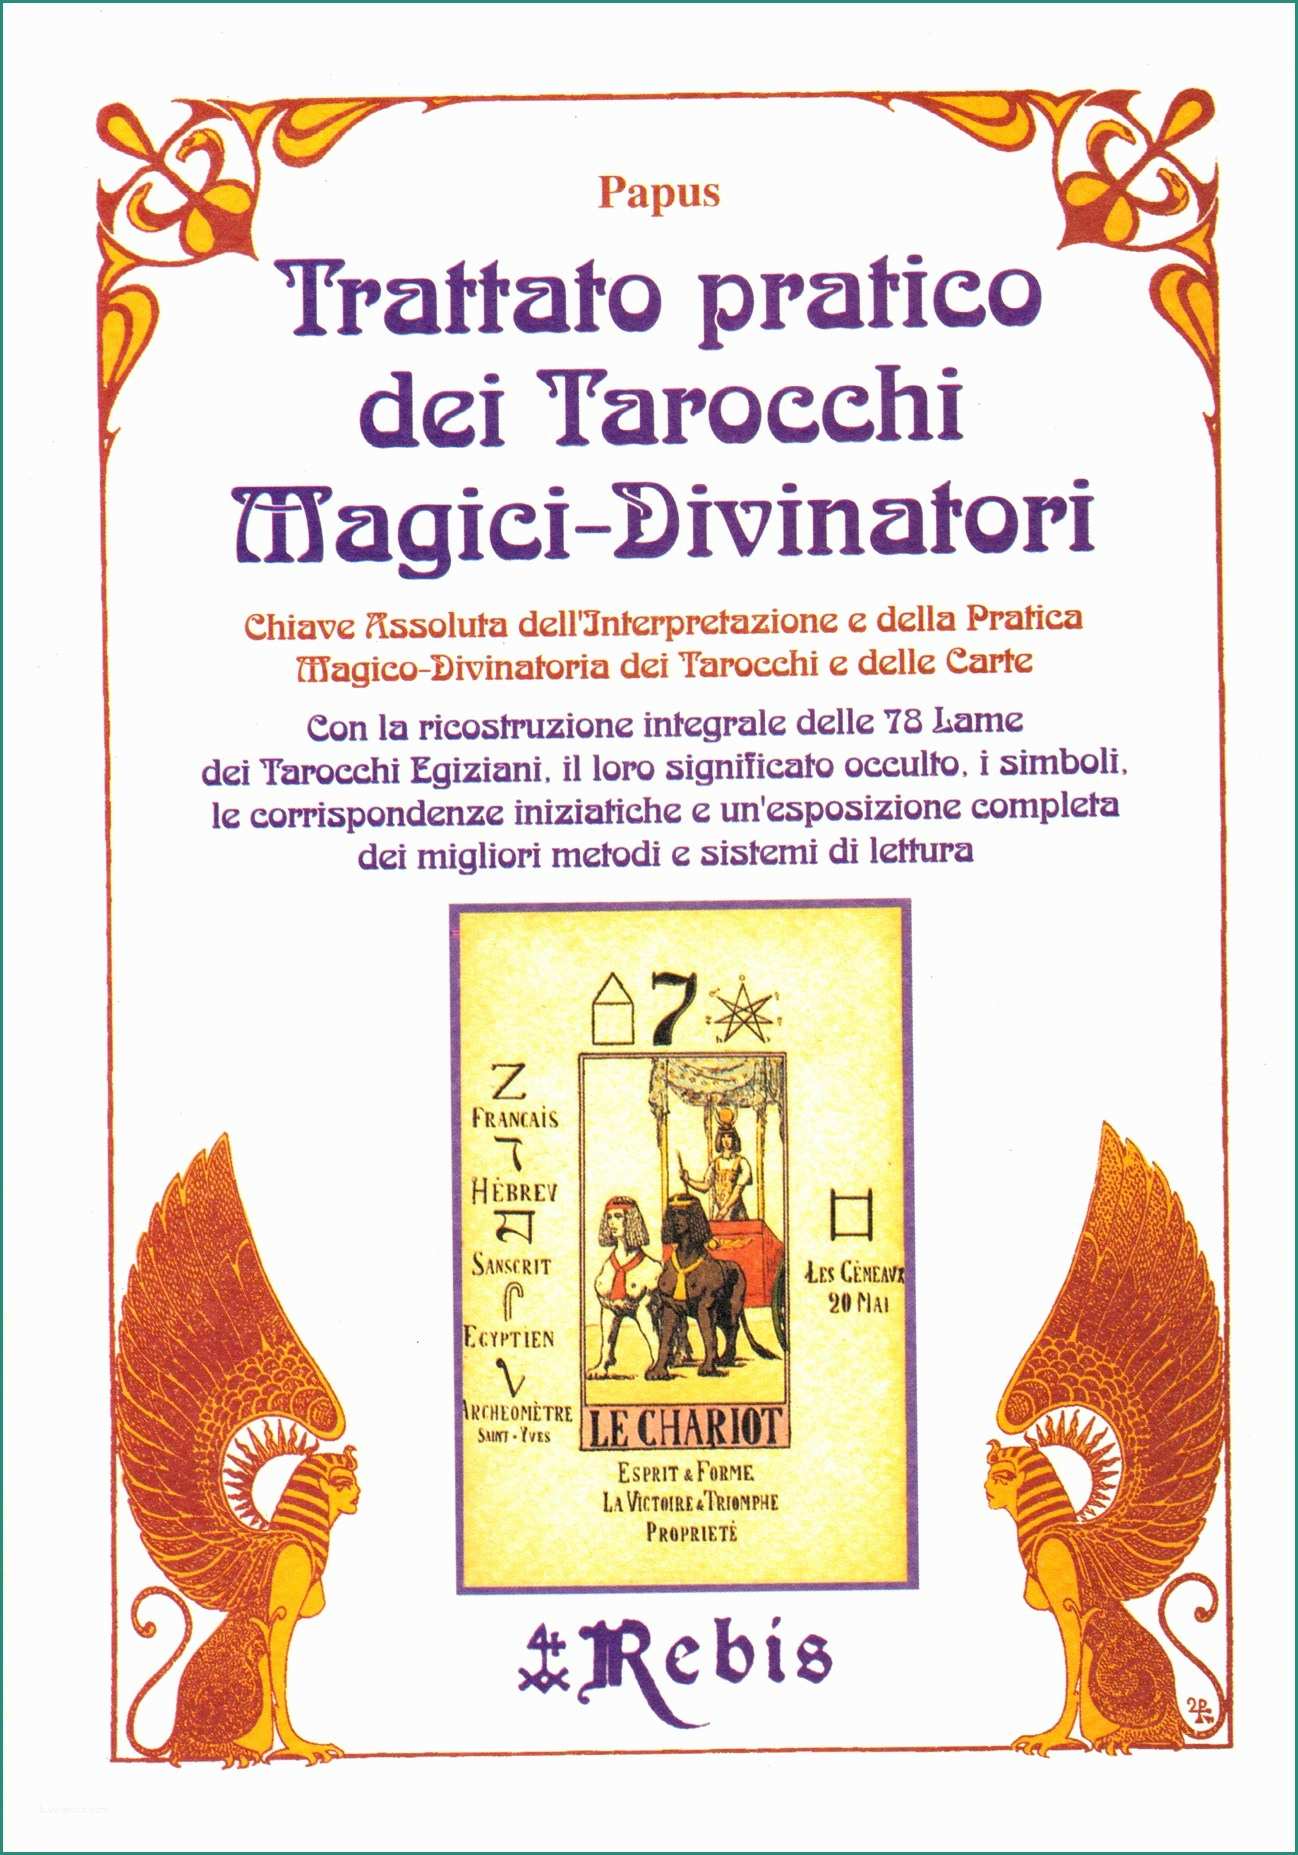 Cabala Significato Dei sogni E Trattato Pratico Dei Tarocchi Magici Divinatori Edizioni Rebis